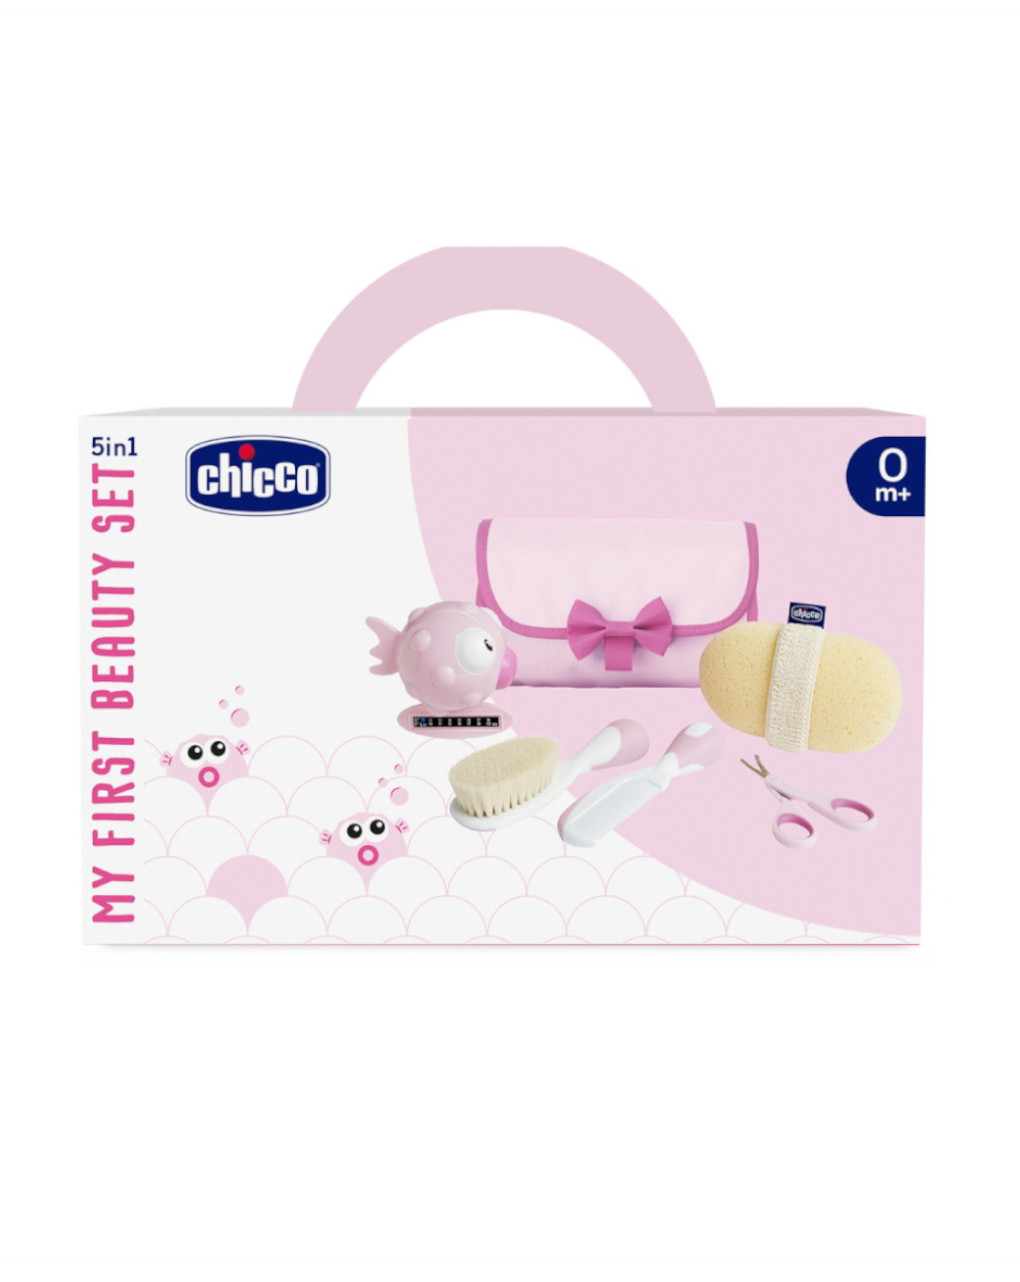 Set de higiene 5en1 my first beauty rosa 0m+ - chicco - Chicco